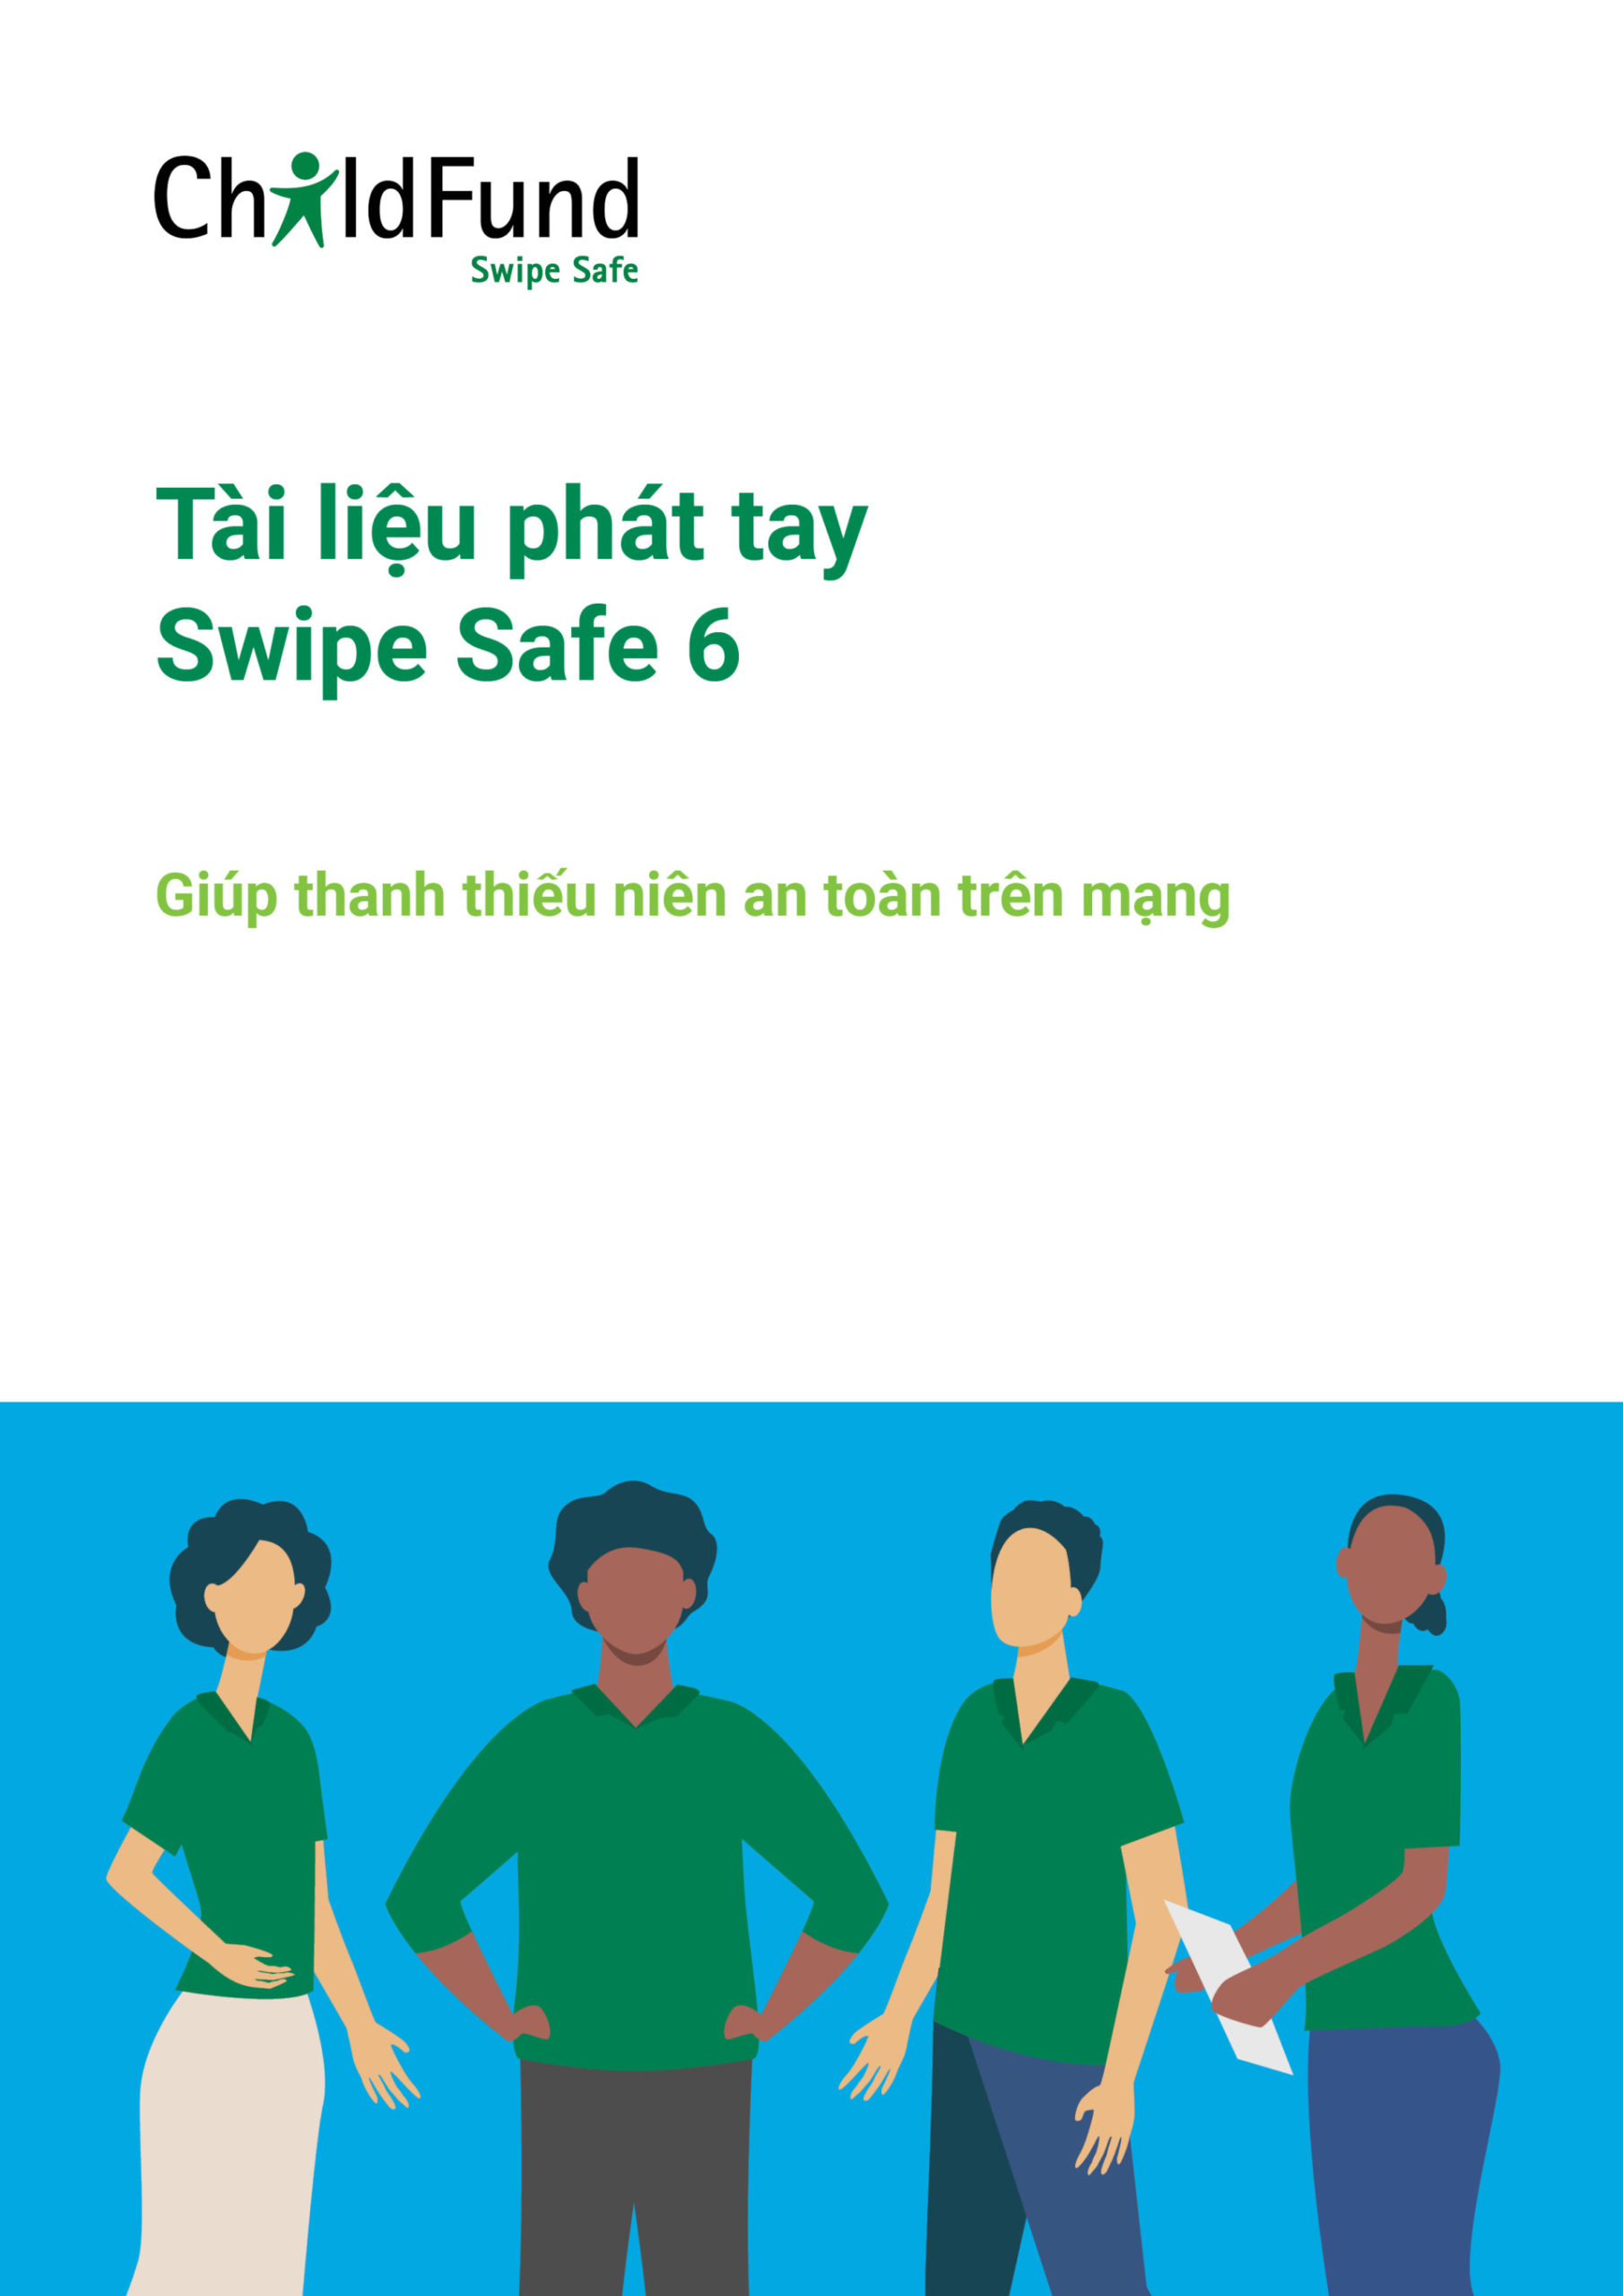 IEC – Tài liệu phát tay Swipe Safe 6